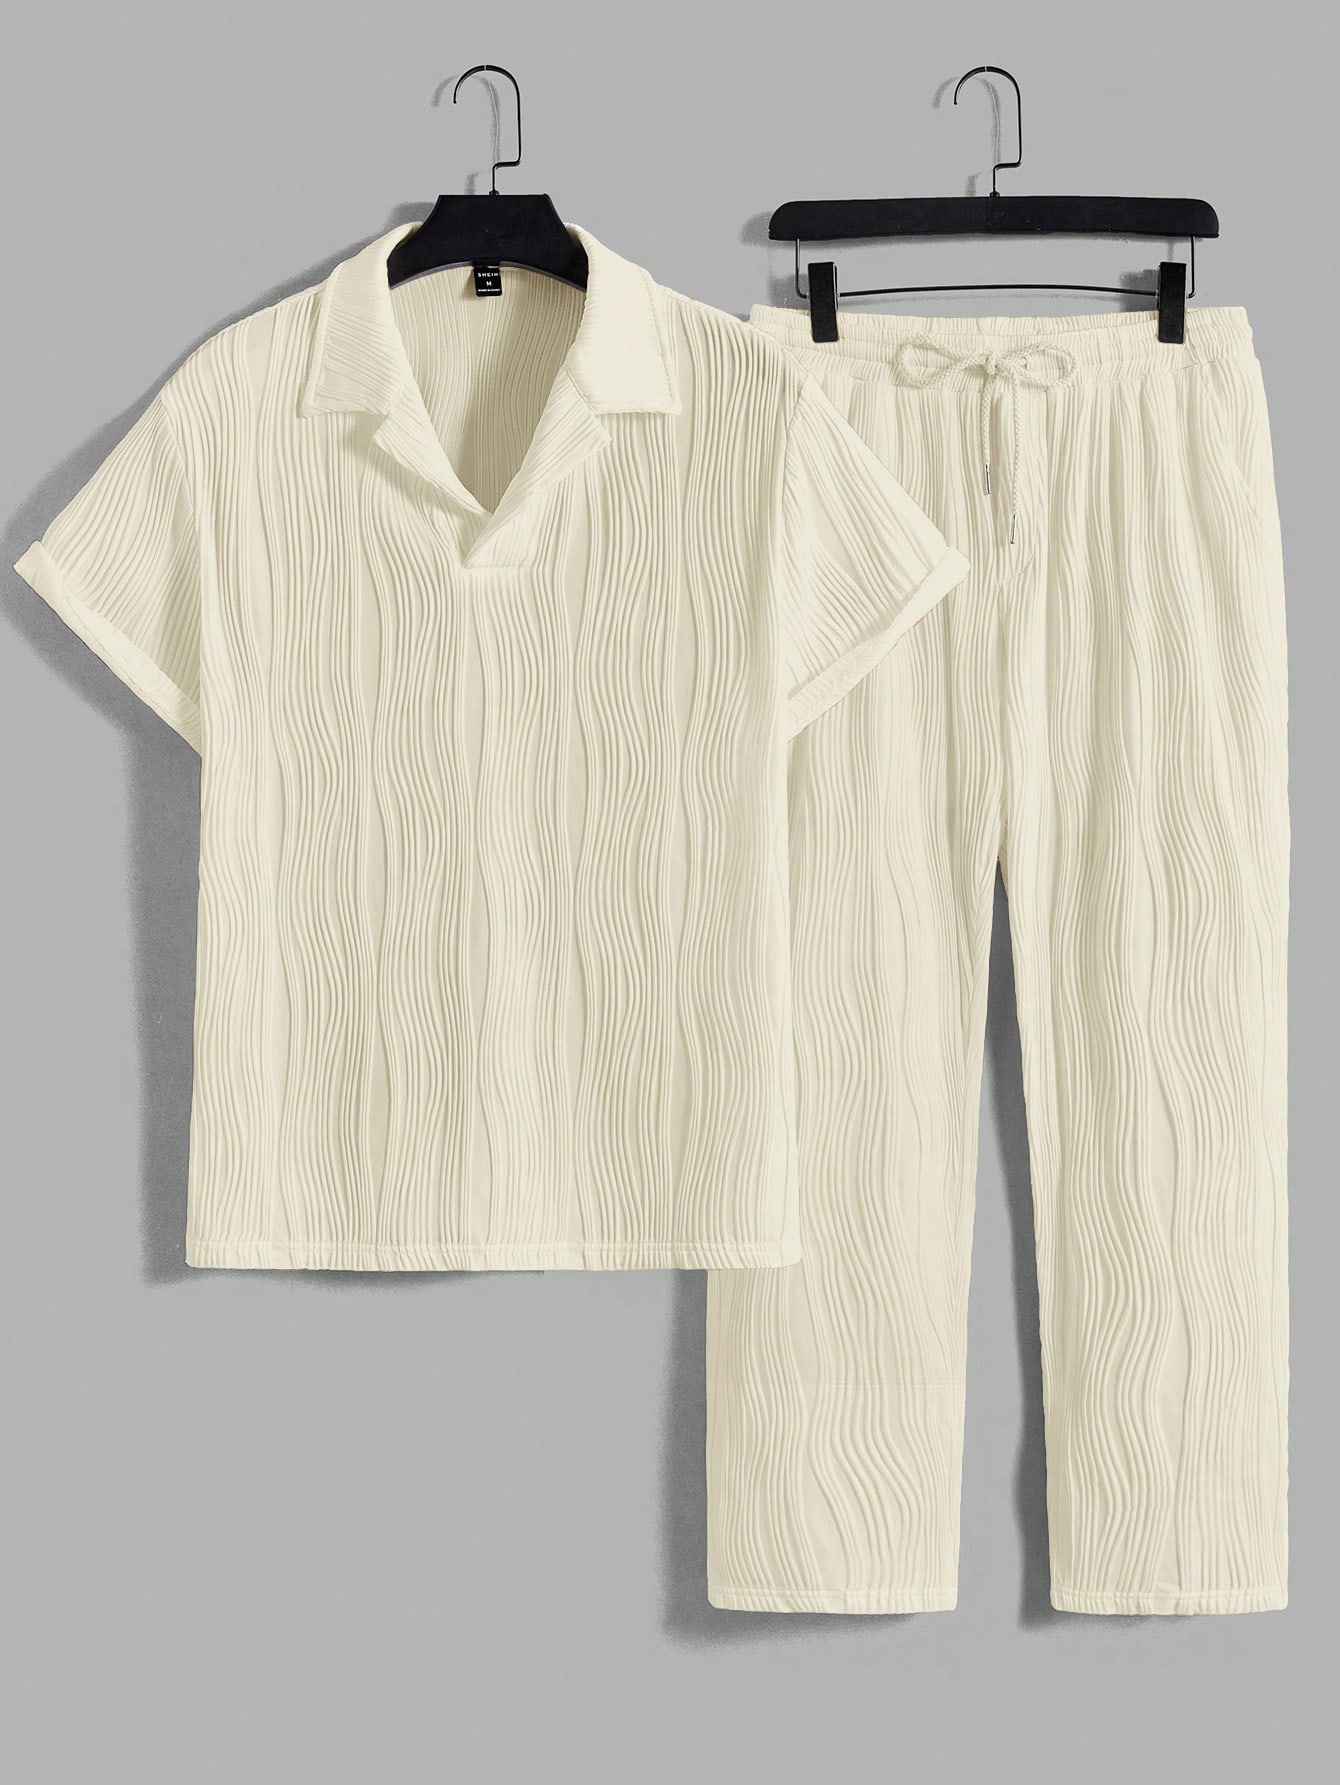 Мужской комплект из рубашки и брюк с монохромной текстурой Manfinity Homme, абрикос